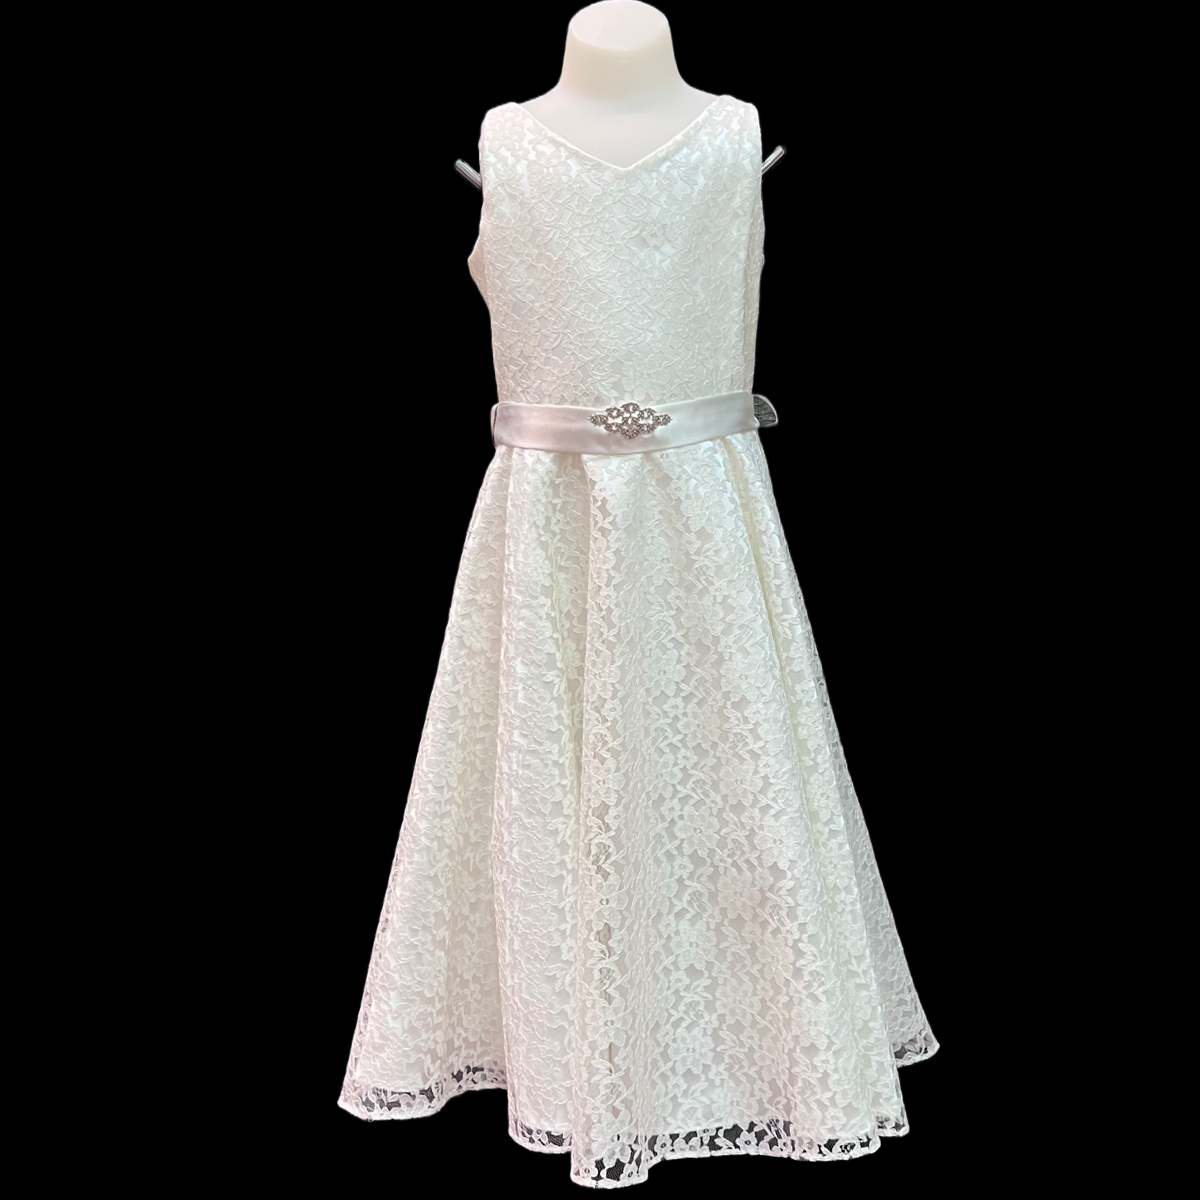 Pre-Teen Ivory Lace Dress w/ Rhinestone Brooch